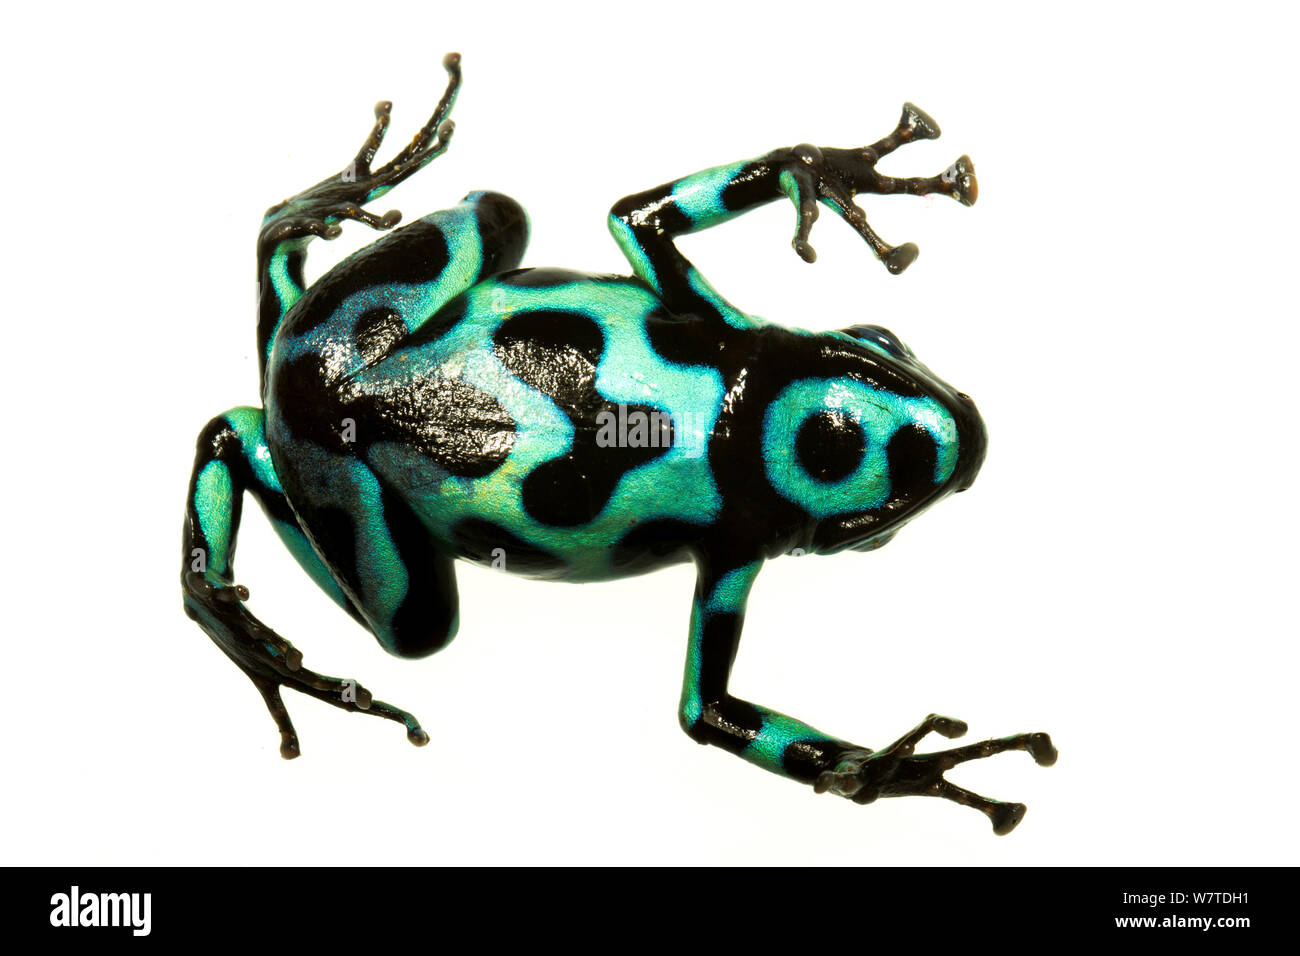 Noir et vert grenouille Poison (Dendrobates auratus) Vue du dessous, Isla Pastores, Panama. Projet d'Meetyourneighbors.net Banque D'Images